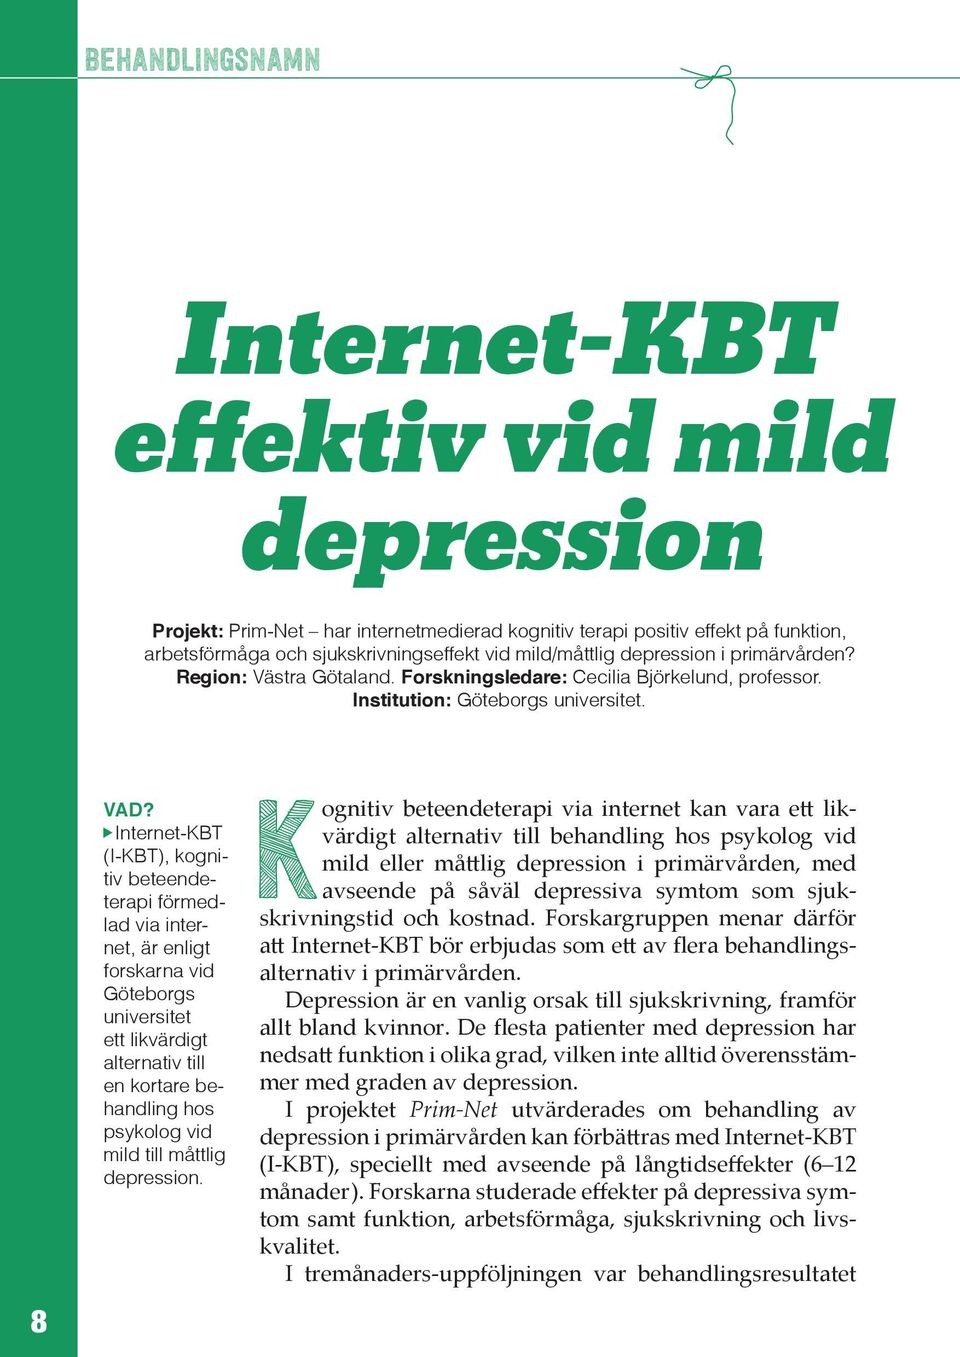 Internet-KBT (I-KBT), kognitiv beteendeterapi förmedlad via internet, är enligt forskarna vid Göteborgs universitet ett likvärdigt alternativ till en kortare behandling hos psykolog vid mild till